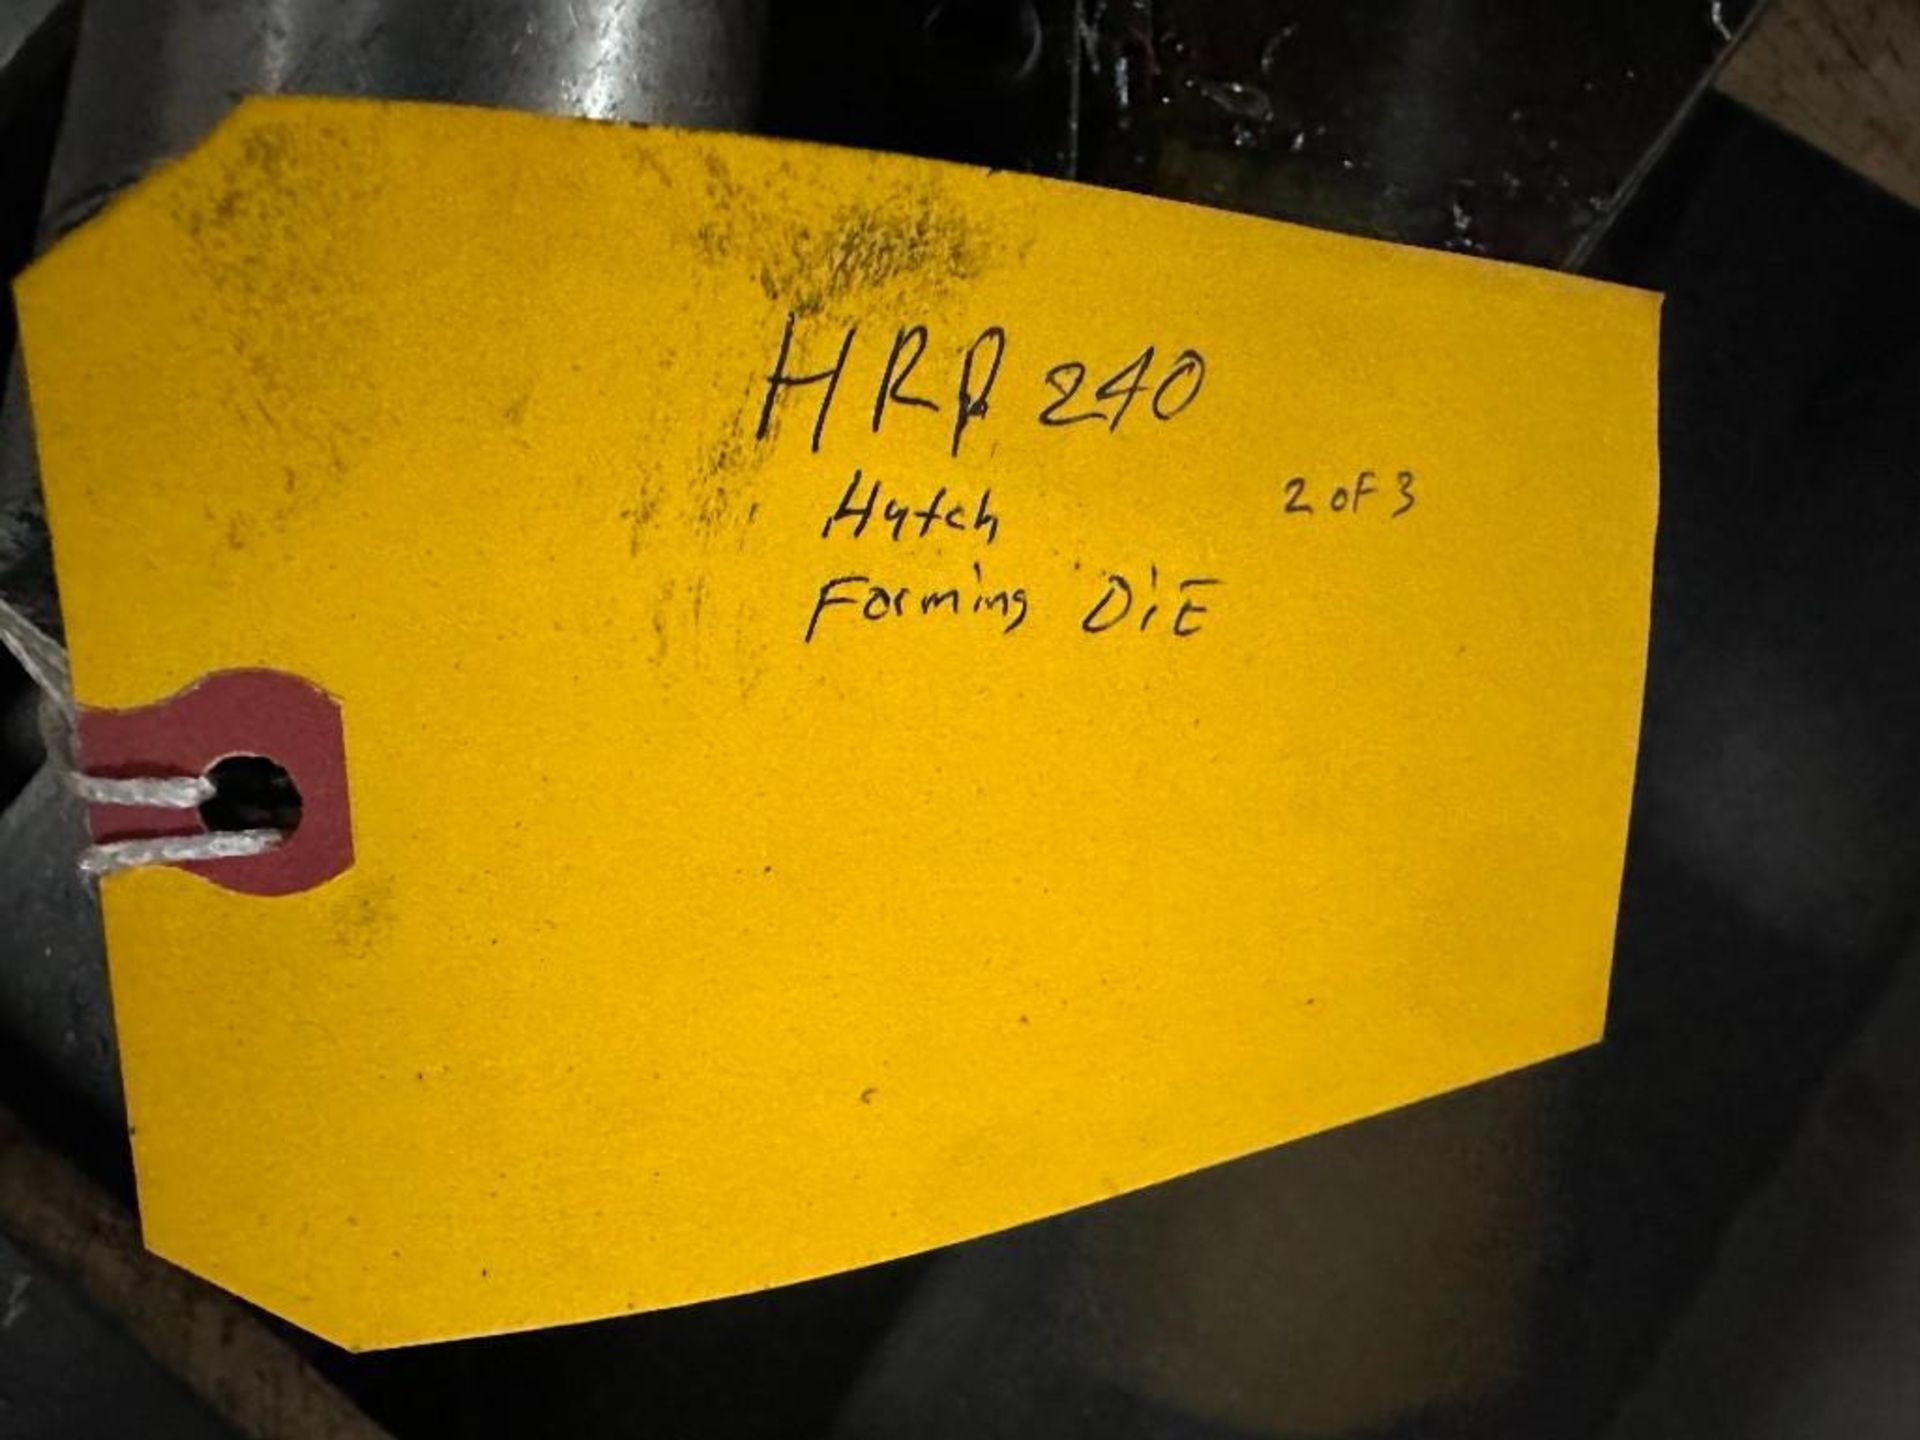 STEEL PRESS DIE - HRP 240 HUTCH FORMING DIE - Image 5 of 5